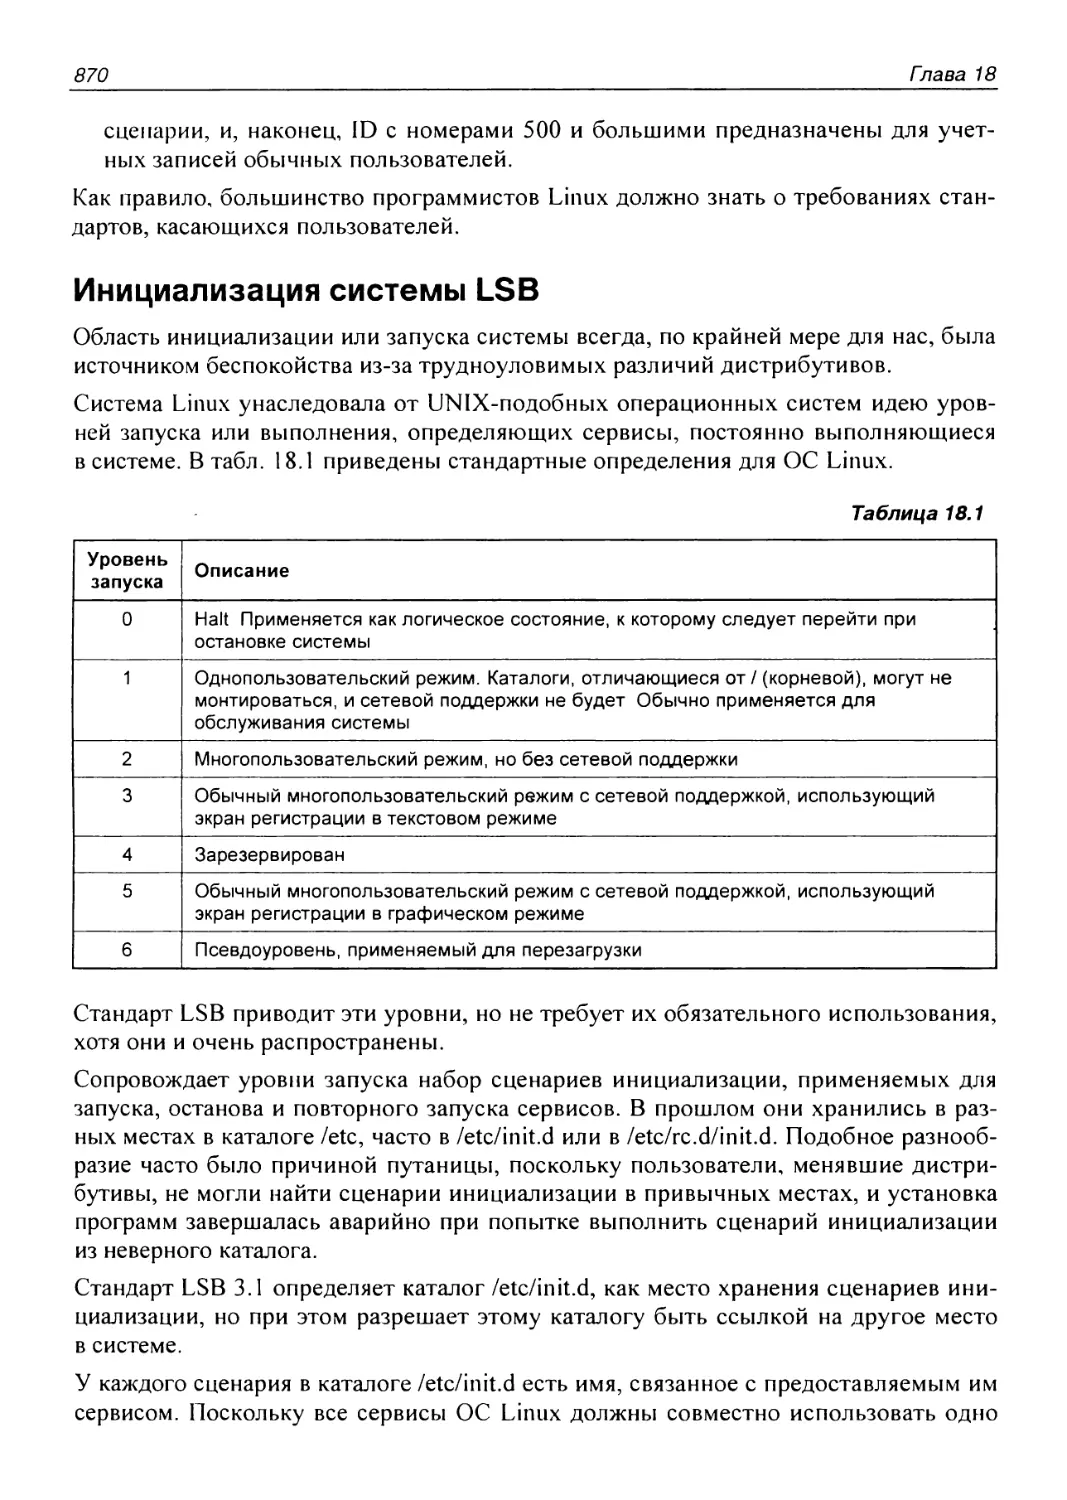 Инициализация системы LSB